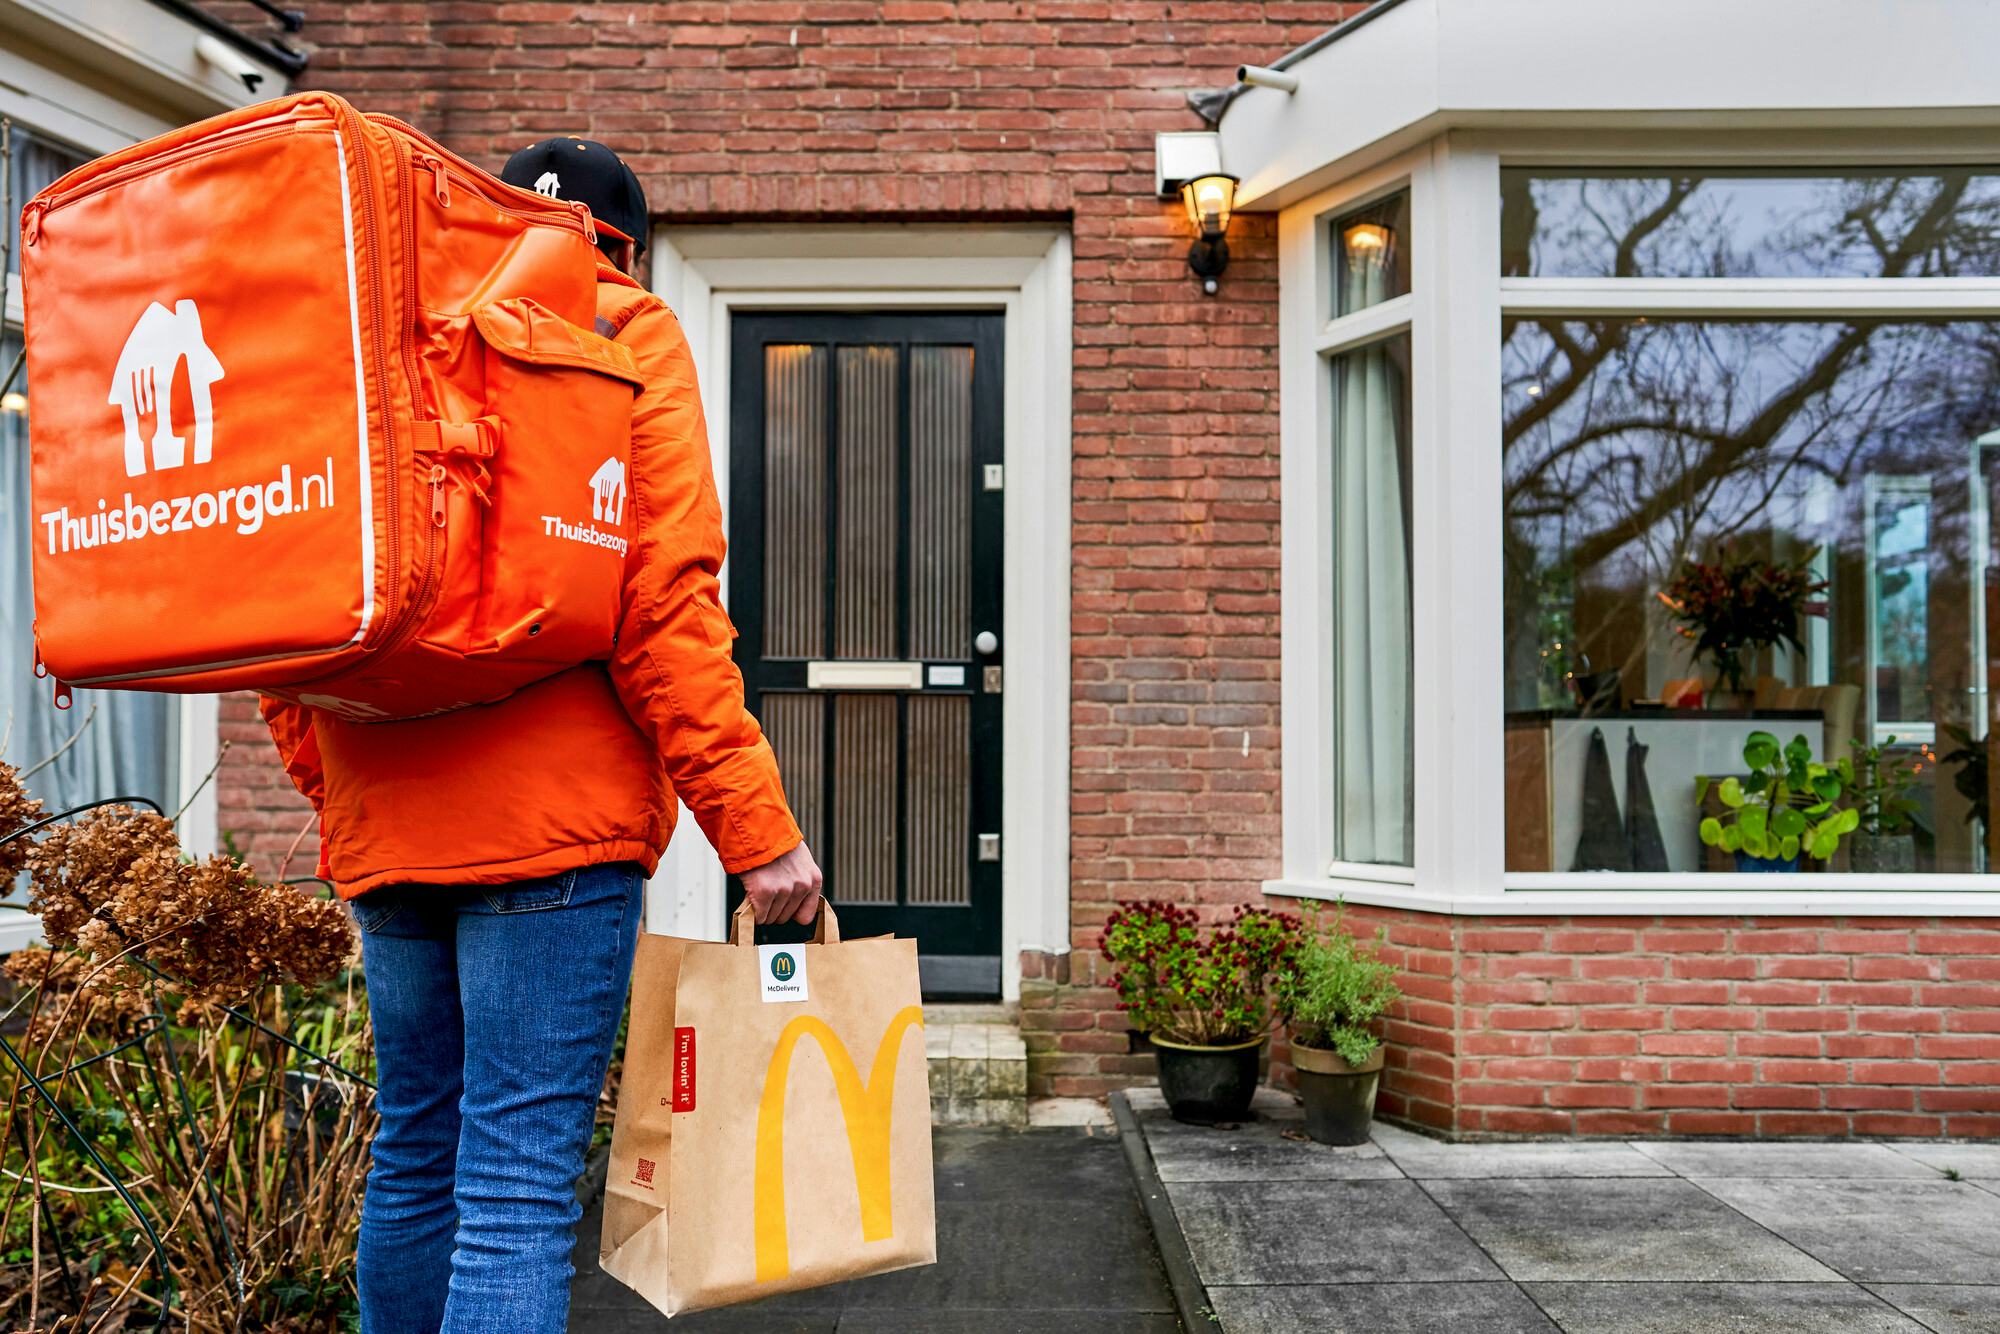 McDonald's naast Uber Eats ook met Thuisbezorgd.nl in zee